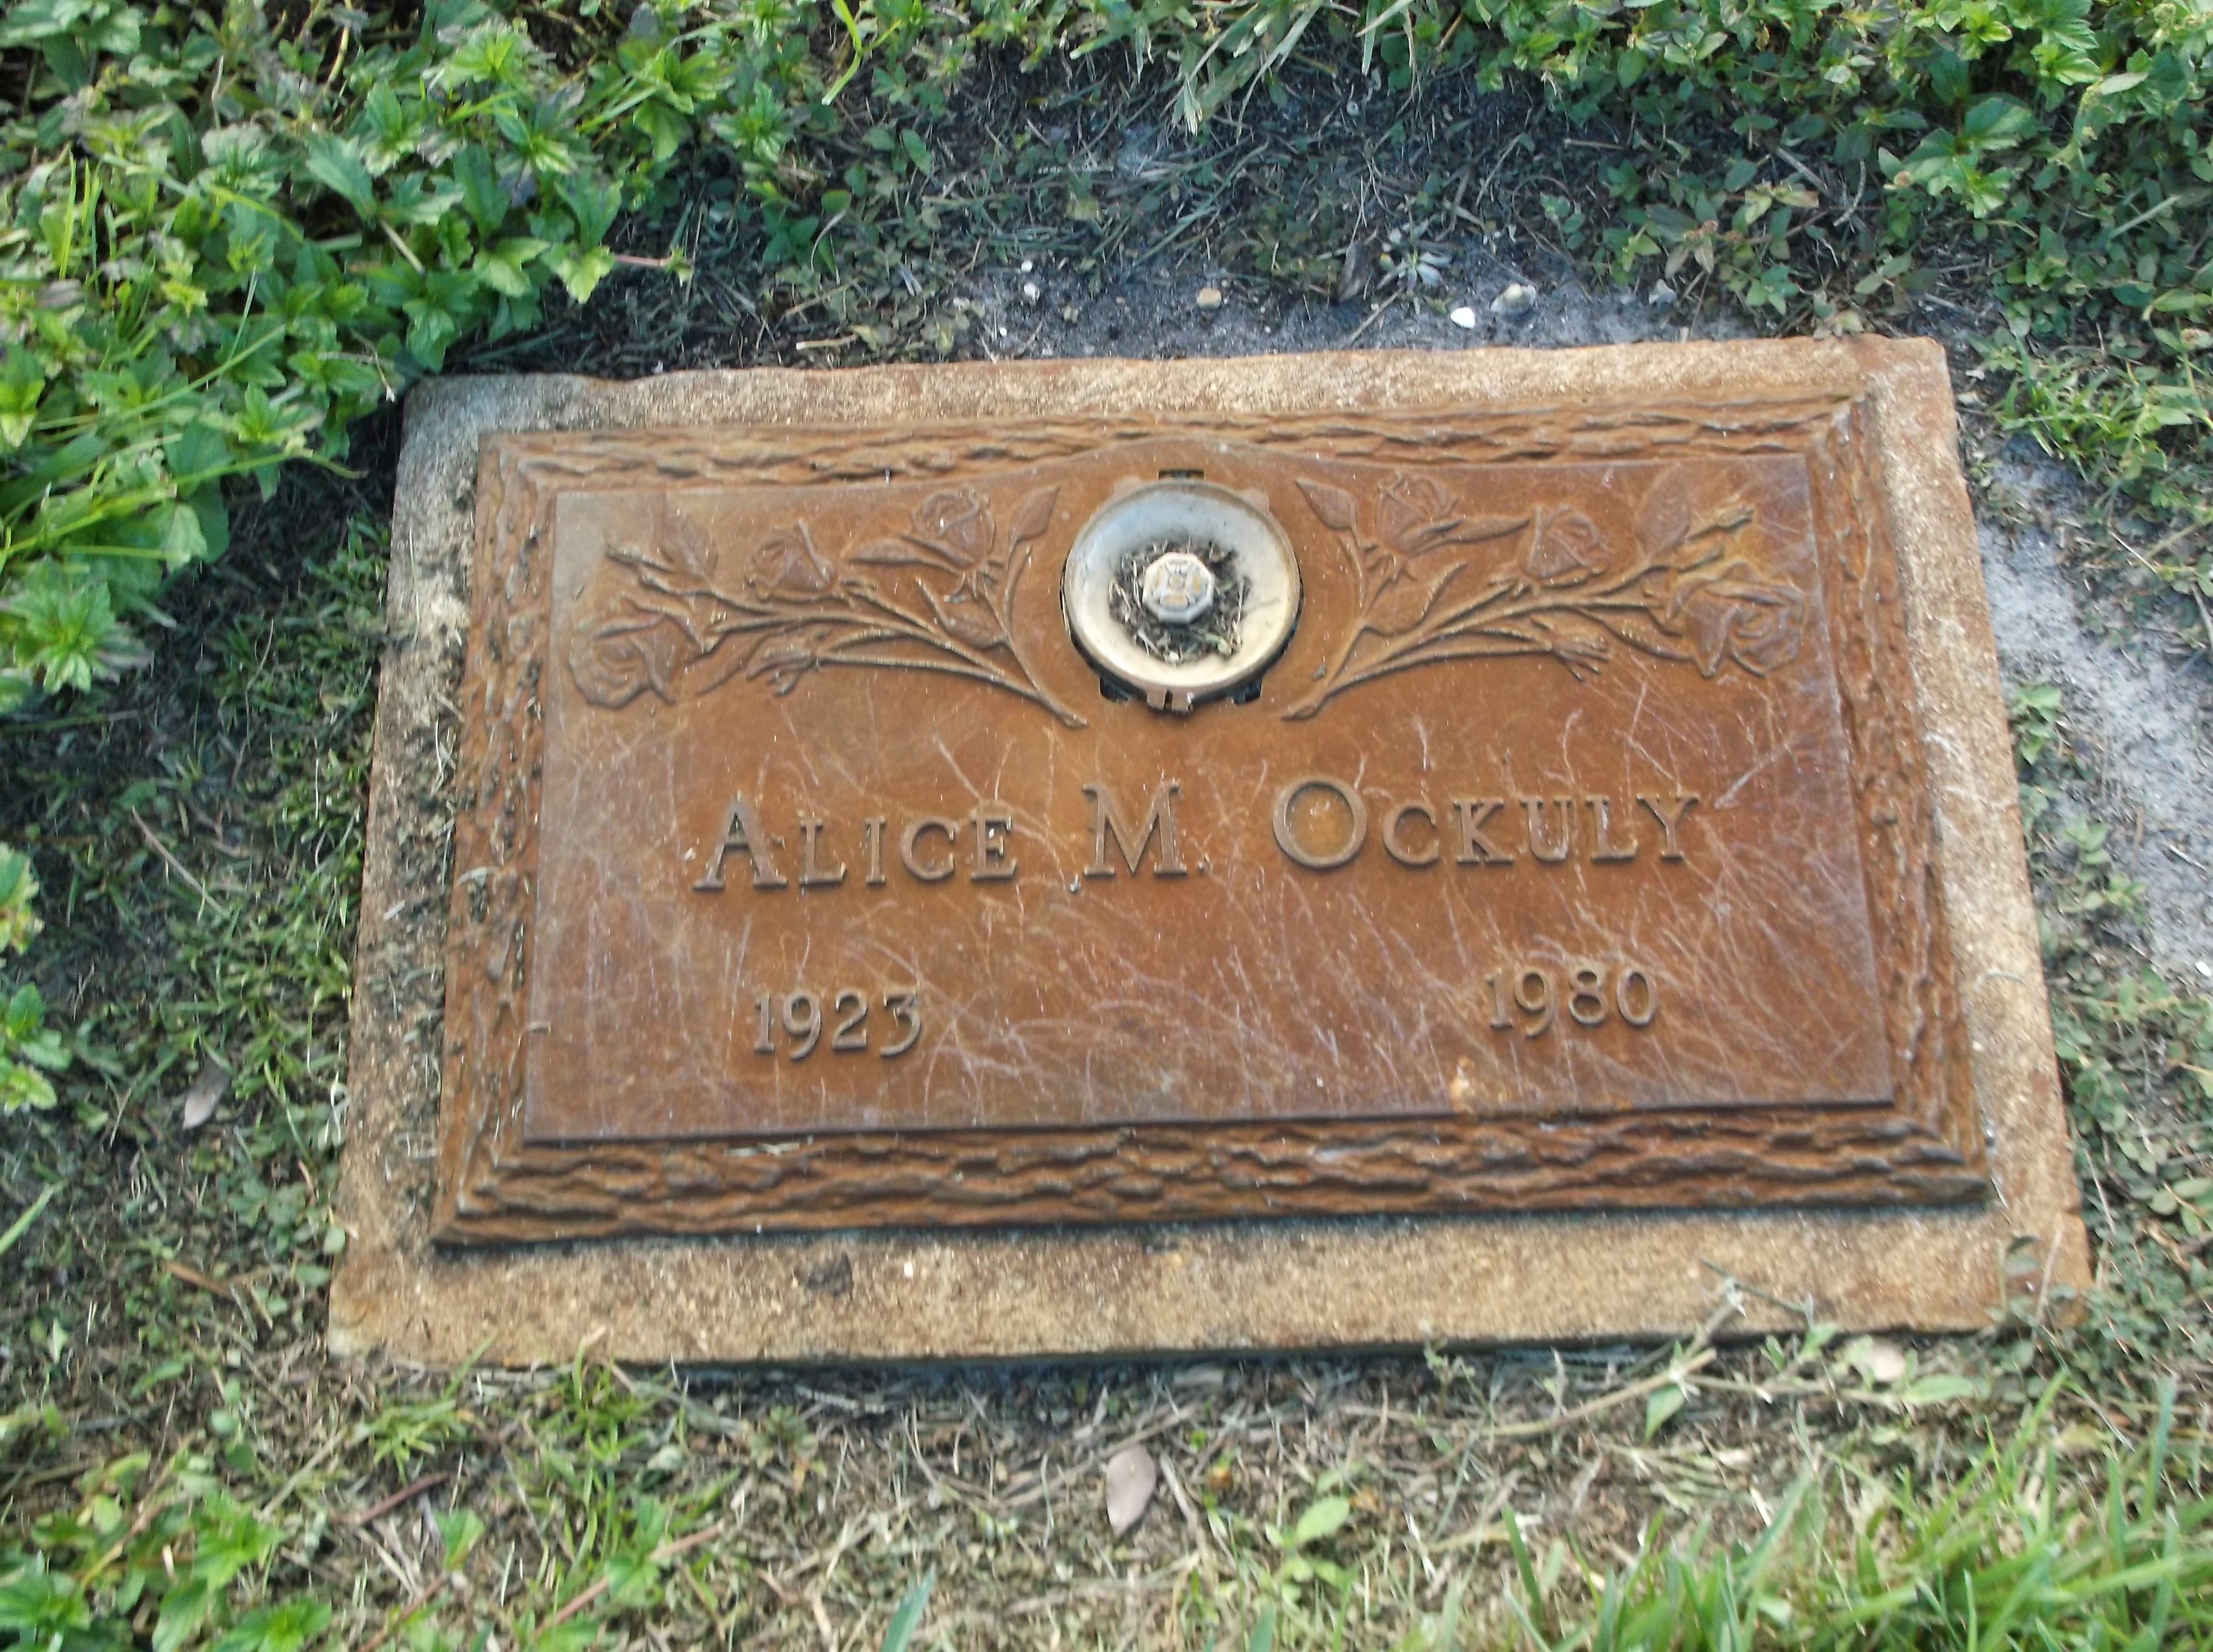 Alice M Ockuly